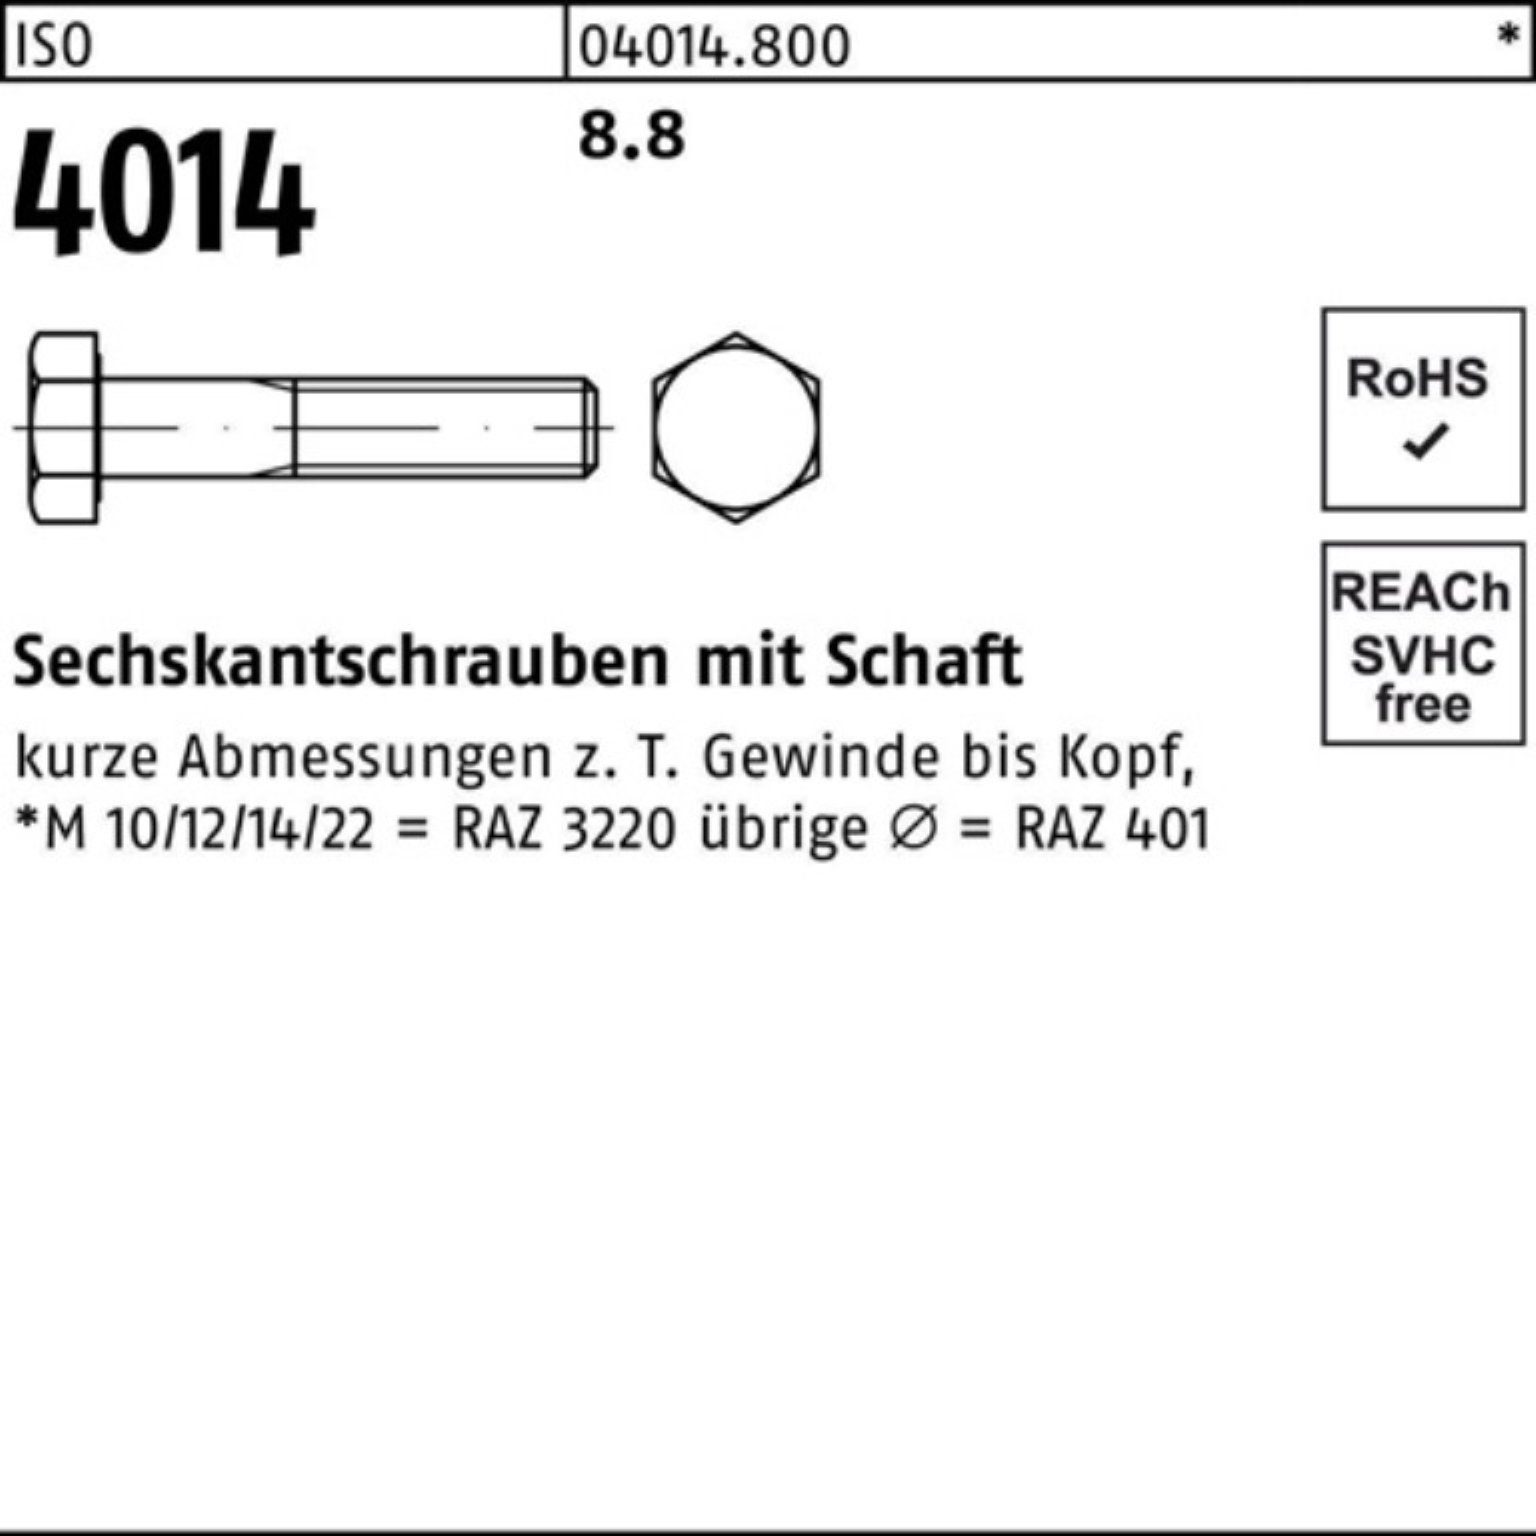 Bufab Sechskantschraube Sechskantschraube 100er 8.8 Pack 280 Stück ISO Schaft M33x 1 4014 ISO